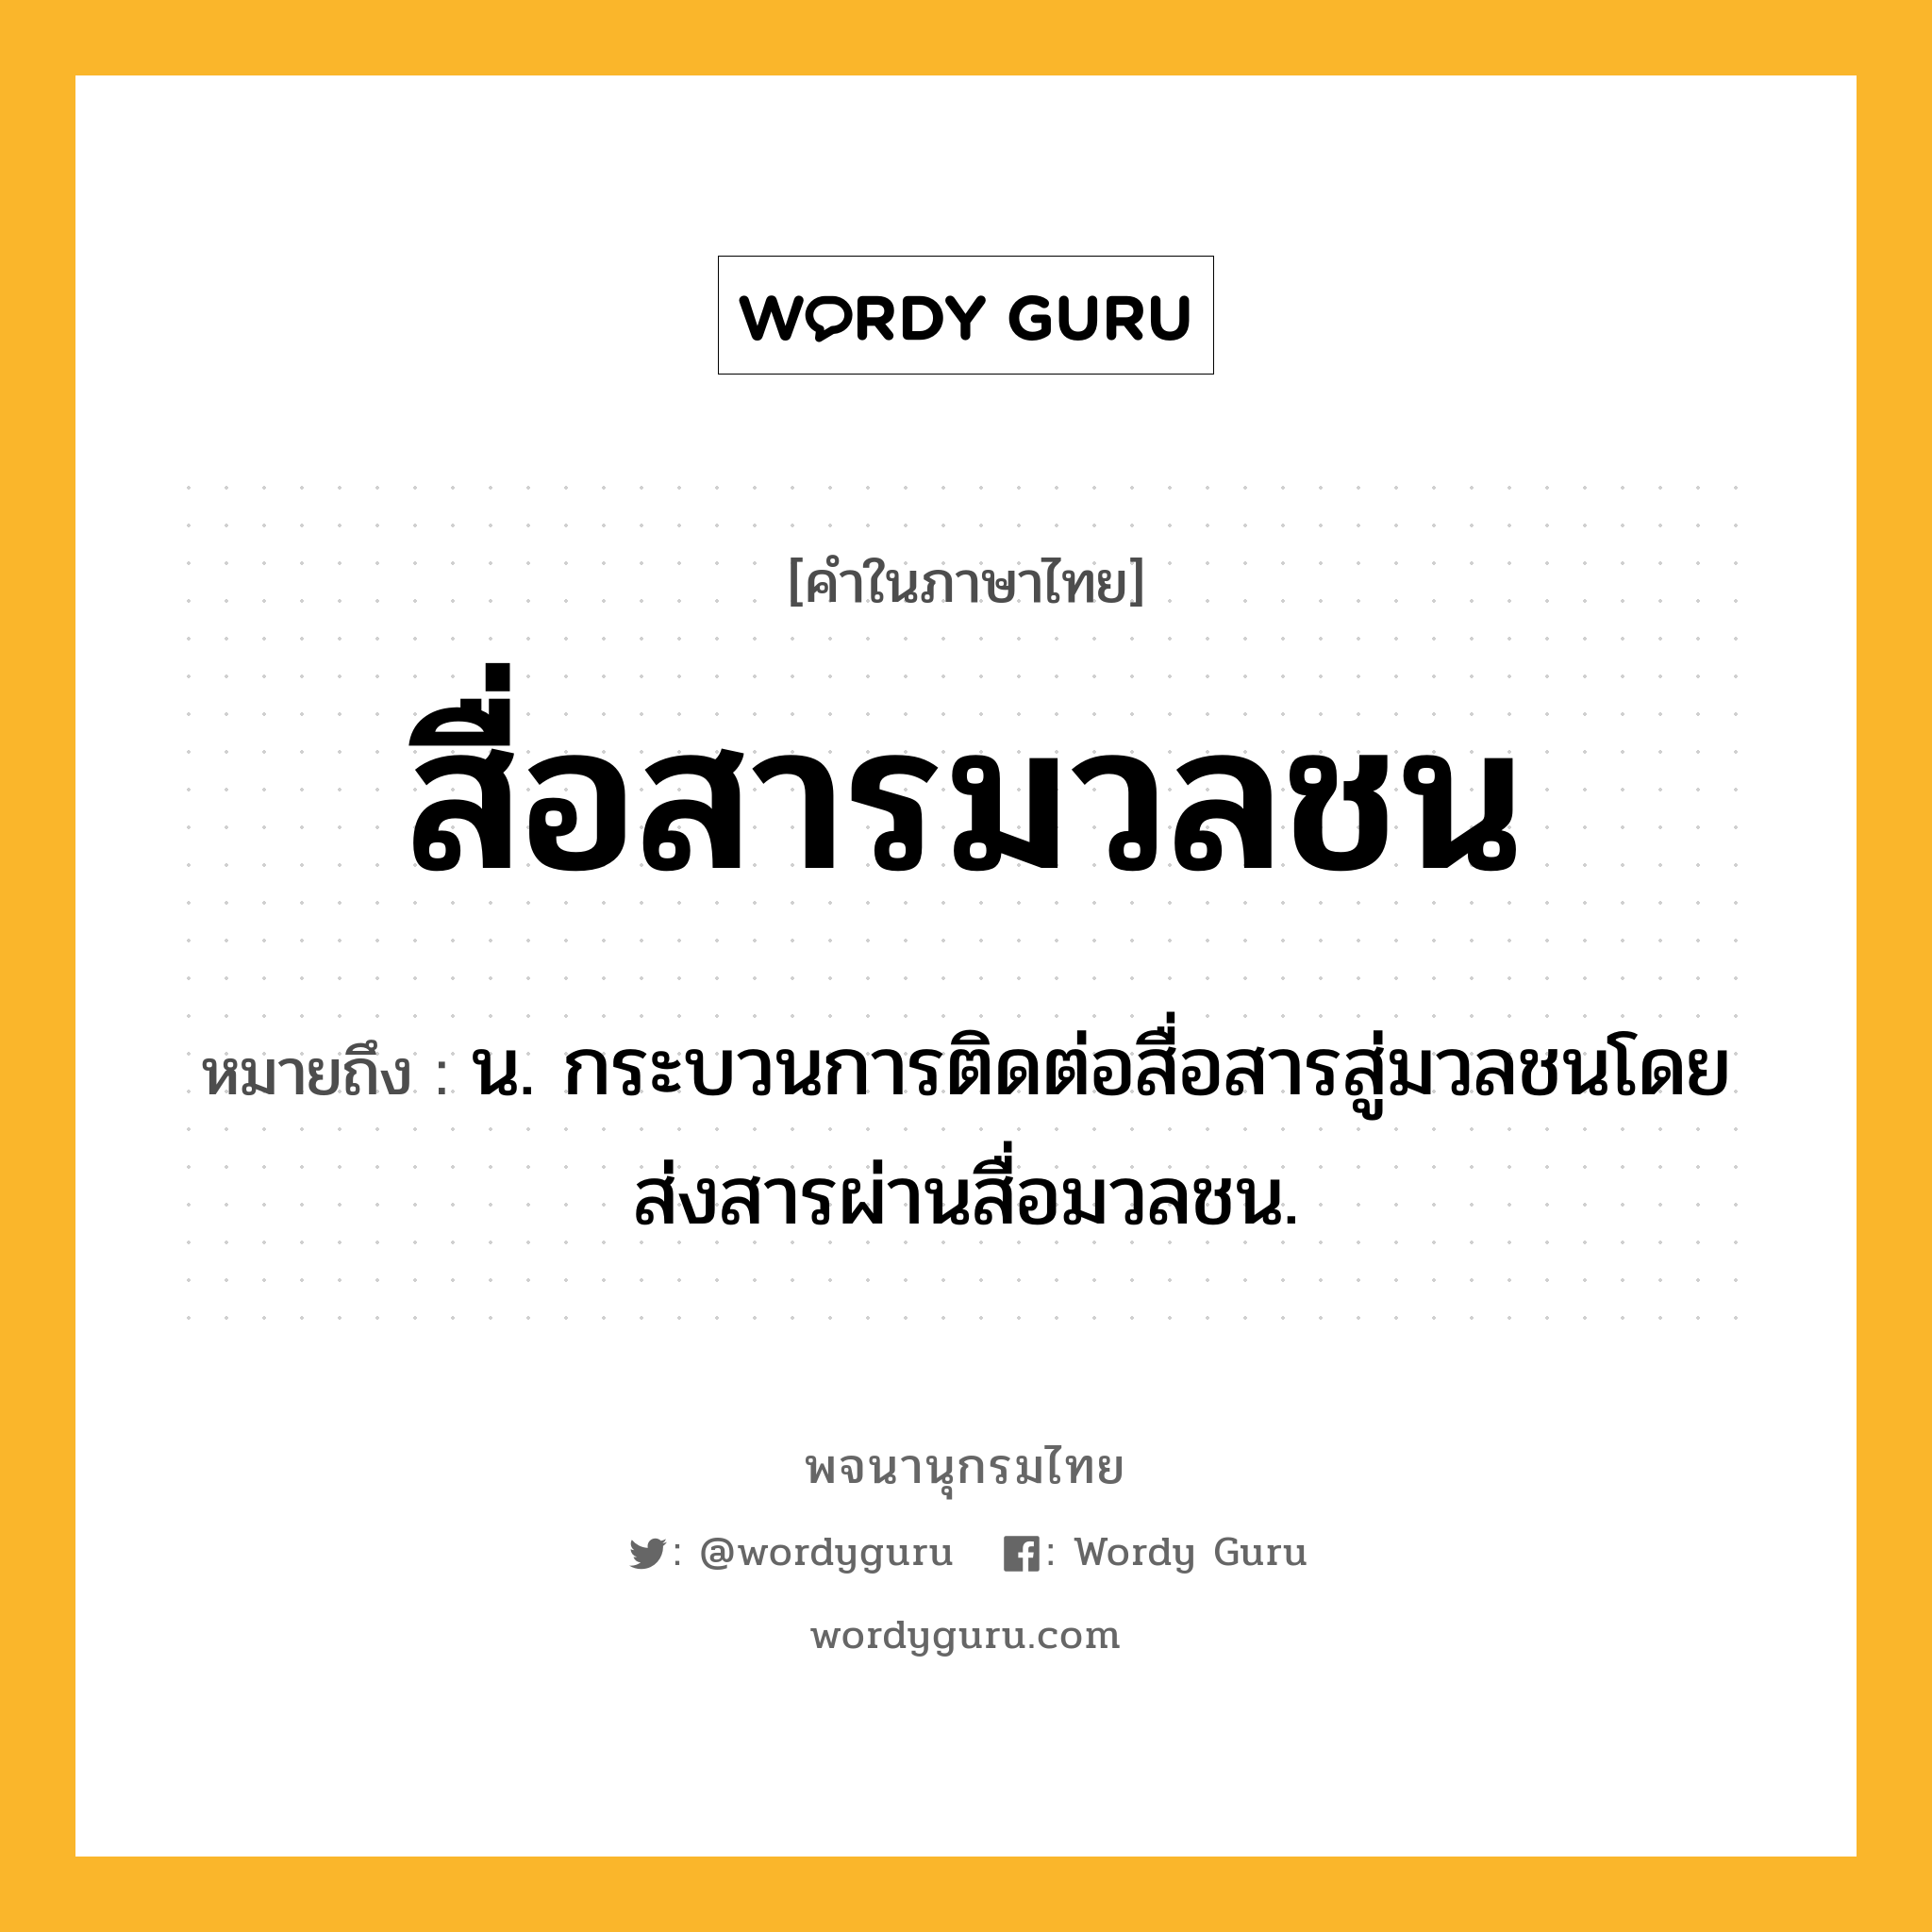 สื่อสารมวลชน หมายถึงอะไร?, คำในภาษาไทย สื่อสารมวลชน หมายถึง น. กระบวนการติดต่อสื่อสารสู่มวลชนโดยส่งสารผ่านสื่อมวลชน.